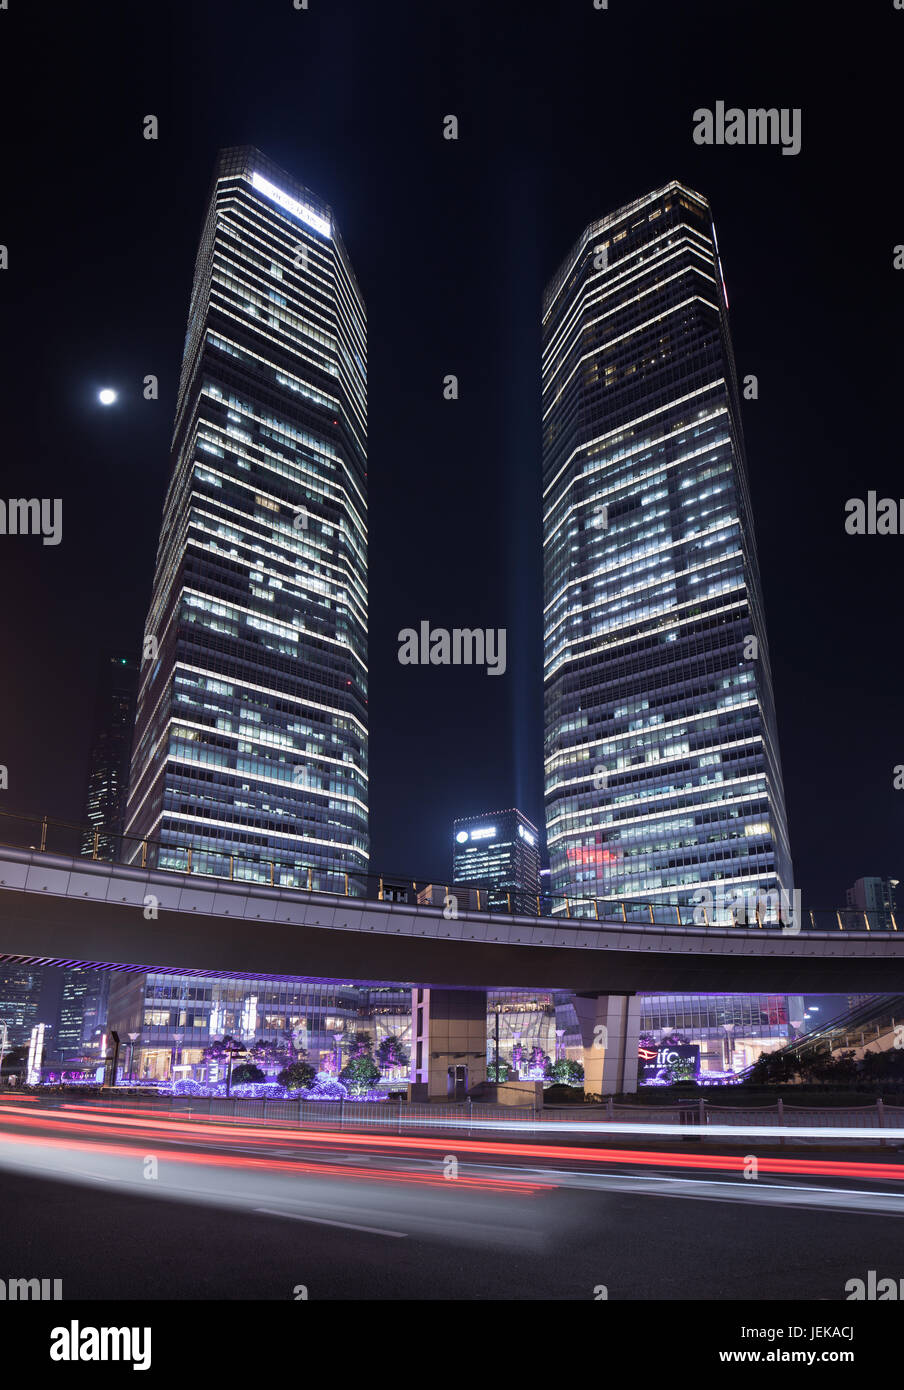 SHANGHAI-DEZ. 2, 2014. Lujiazui Einkaufsmeile. Als einer wichtigsten Finanzviertel ist Lujiazui die am schnellsten wachsende Bereich in Shanghai East Manhattan genannt. Stockfoto